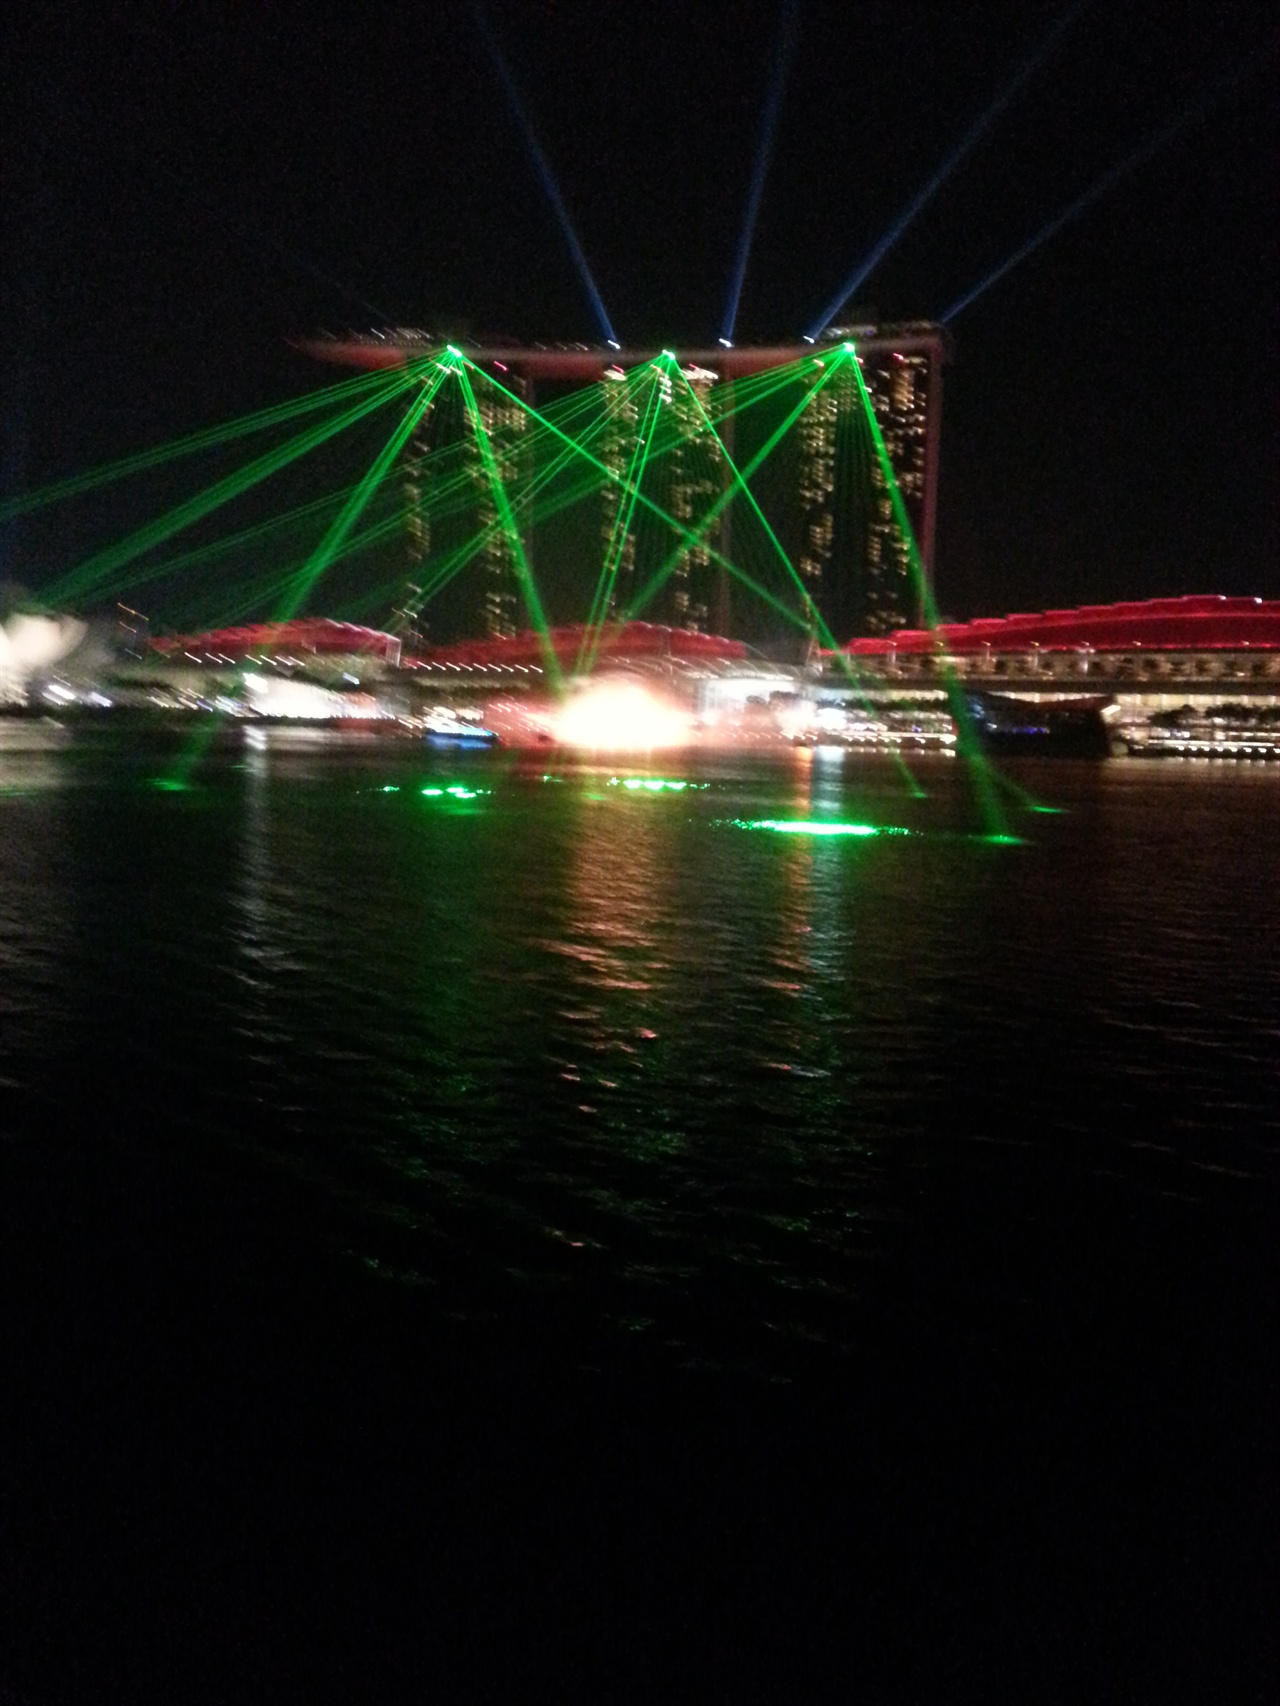 에너지 선진국 싱가포르의 밤은 화려하다. 많은 전력을 사용하며 밤을 밝혀 관광객을 끌고 있다. 싱가포르의 랜드마크 마리나 샌즈 호텔이 레이져 쇼를 하고 있다.